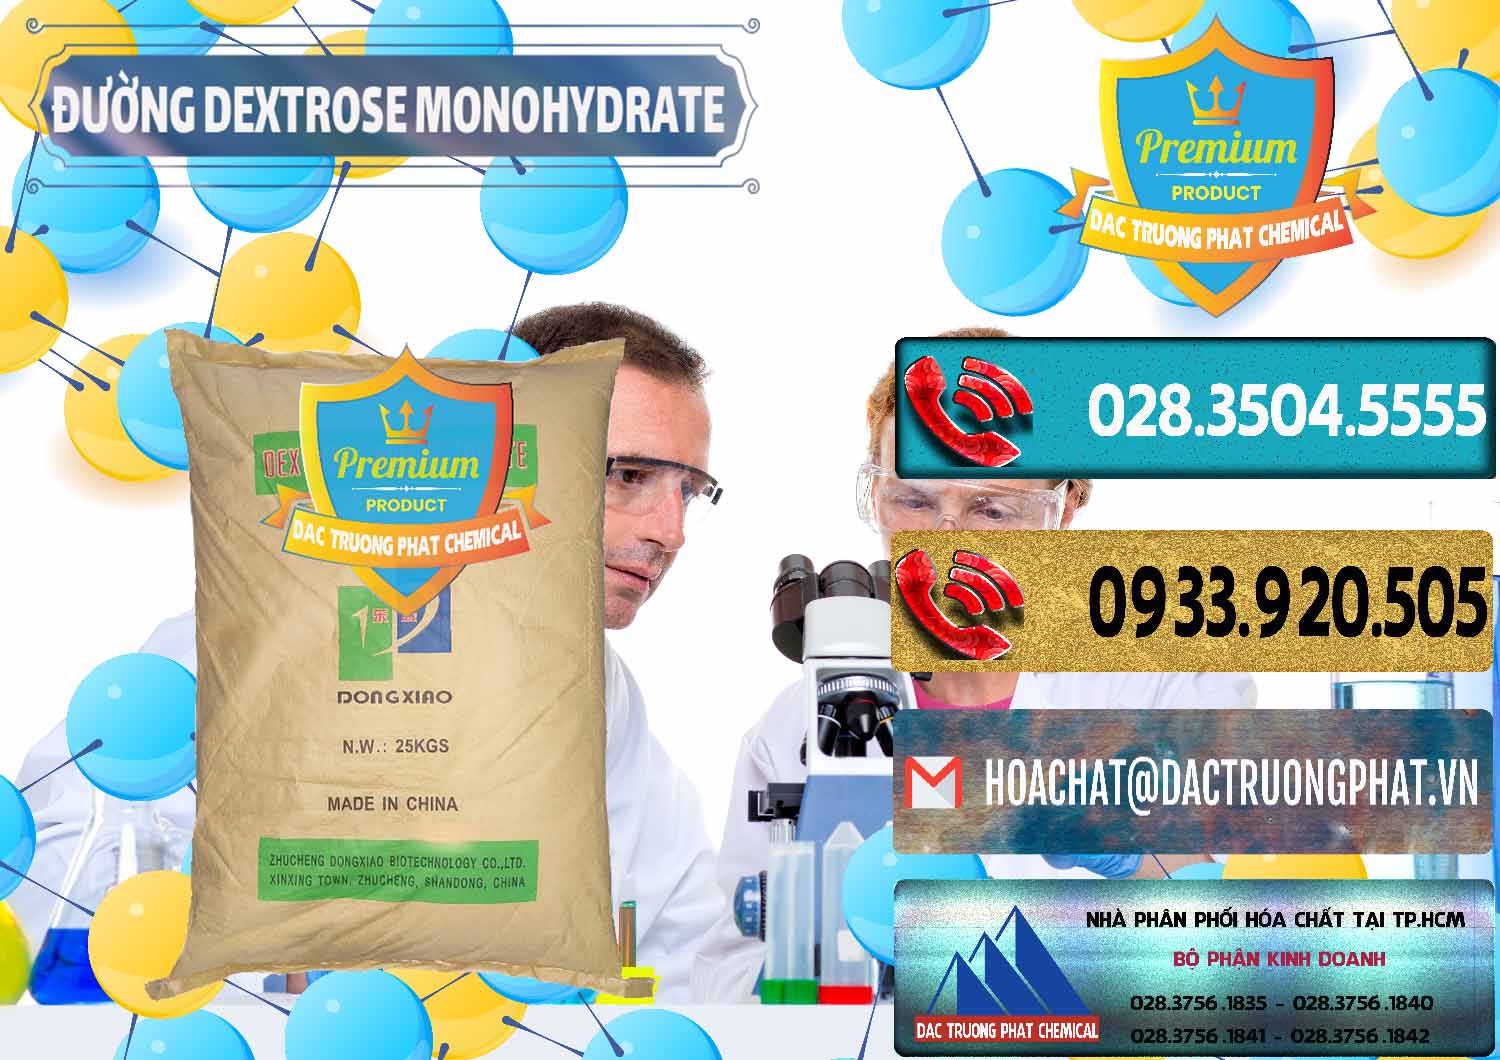 Chuyên cung cấp ( bán ) Đường Dextrose Monohydrate Food Grade Dongxiao Trung Quốc China - 0063 - Cty chuyên kinh doanh & phân phối hóa chất tại TP.HCM - hoachatdetnhuom.com